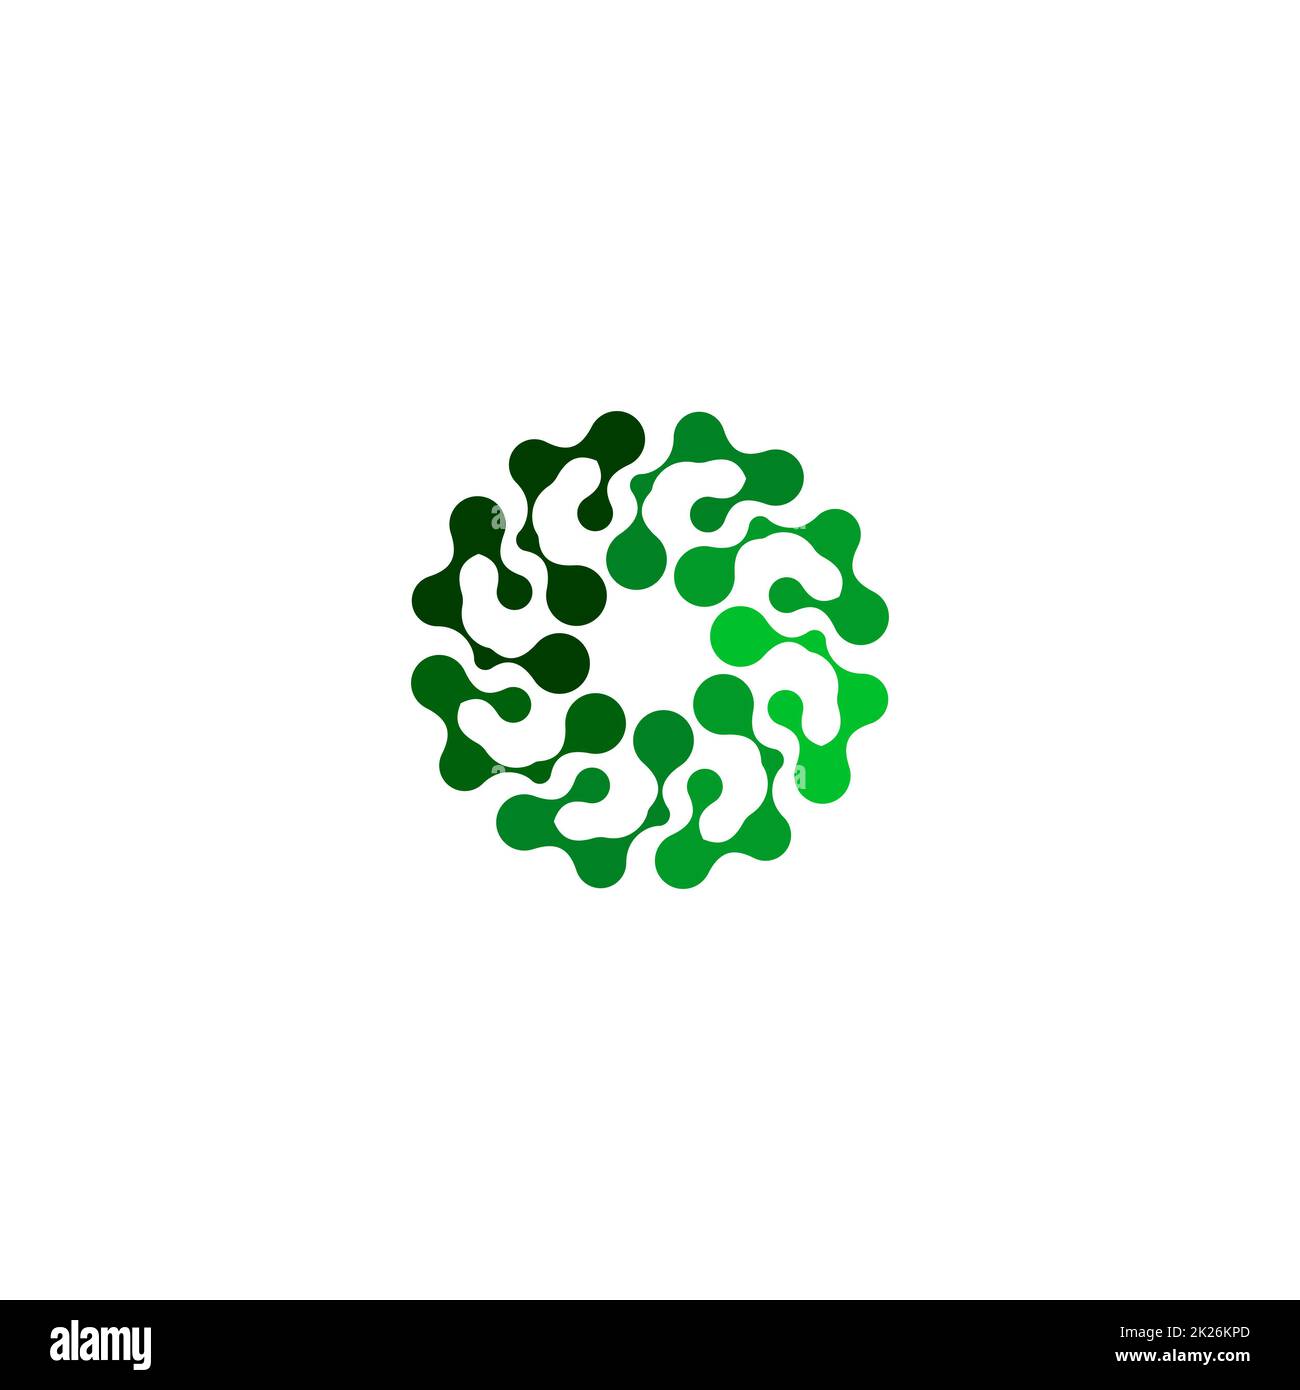 Logo en forme de rond de couleur verte abstraite isolée sur fond blanc, illustration simple et plate stylisée de vecteur de logotype de fleur Banque D'Images